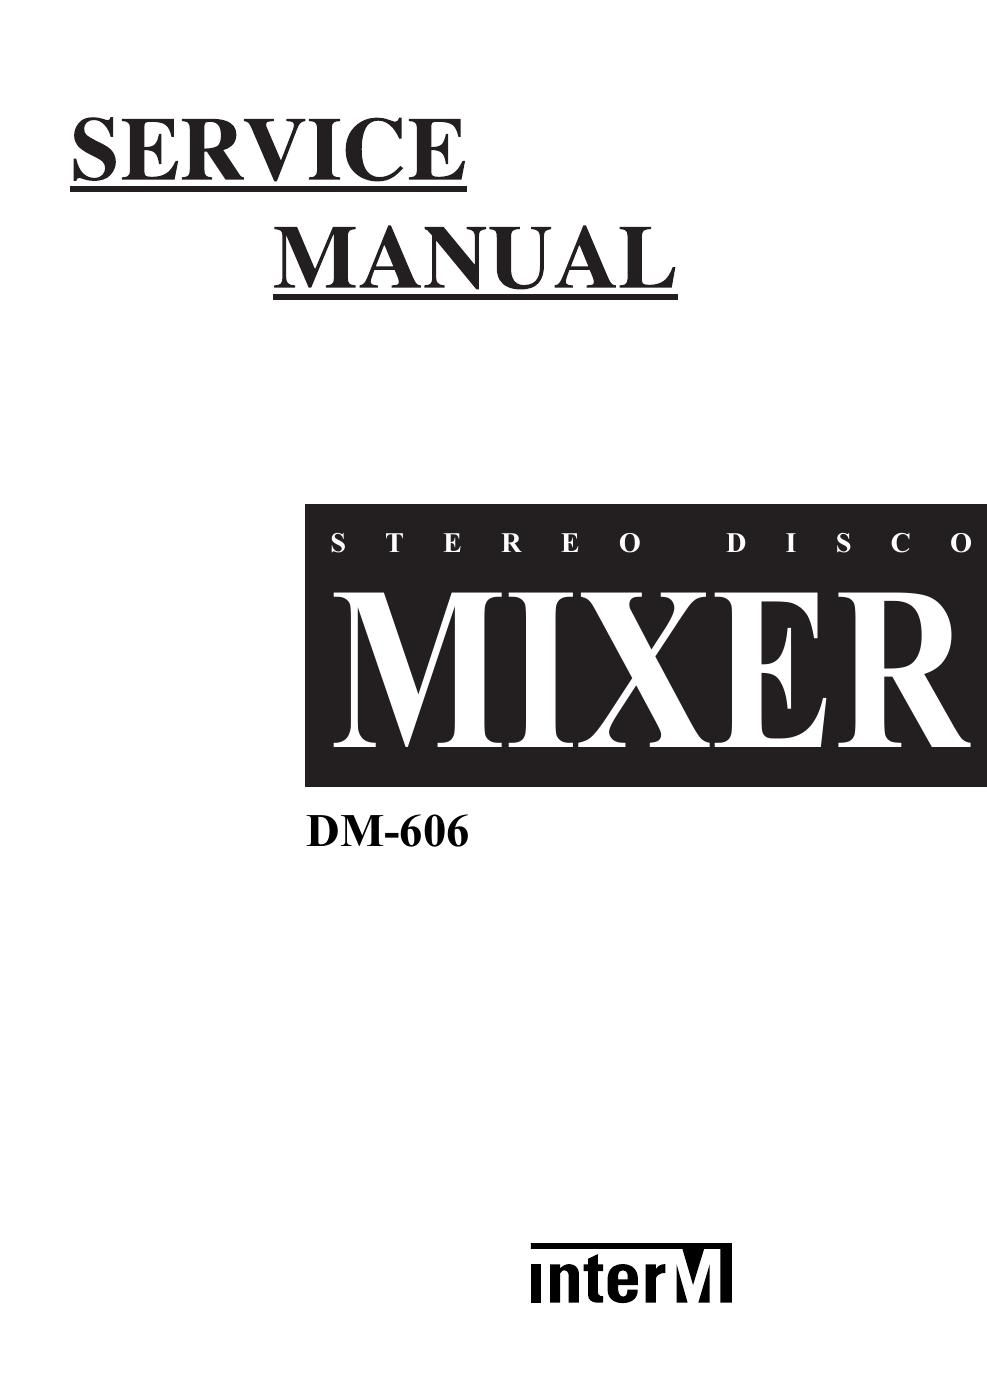 interm dm 606 mixer